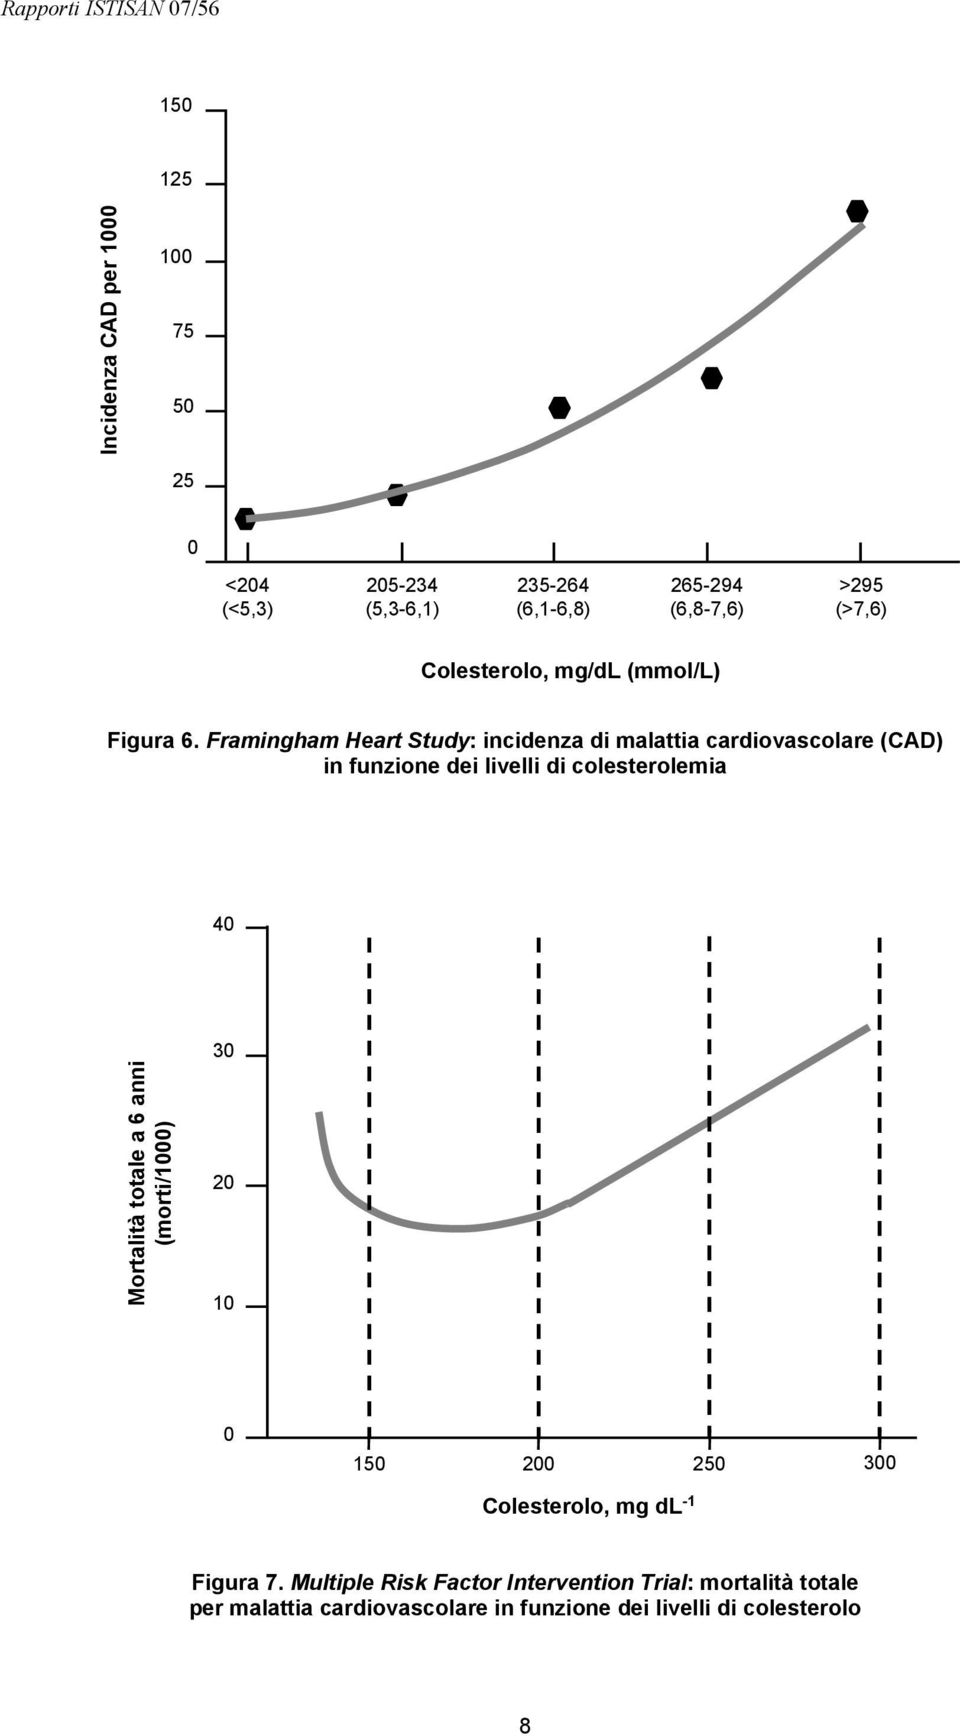 Framingham Heart Study: incidenza di malattia cardiovascolare (CAD) in funzione dei livelli di colesterolemia 40 Mortalità